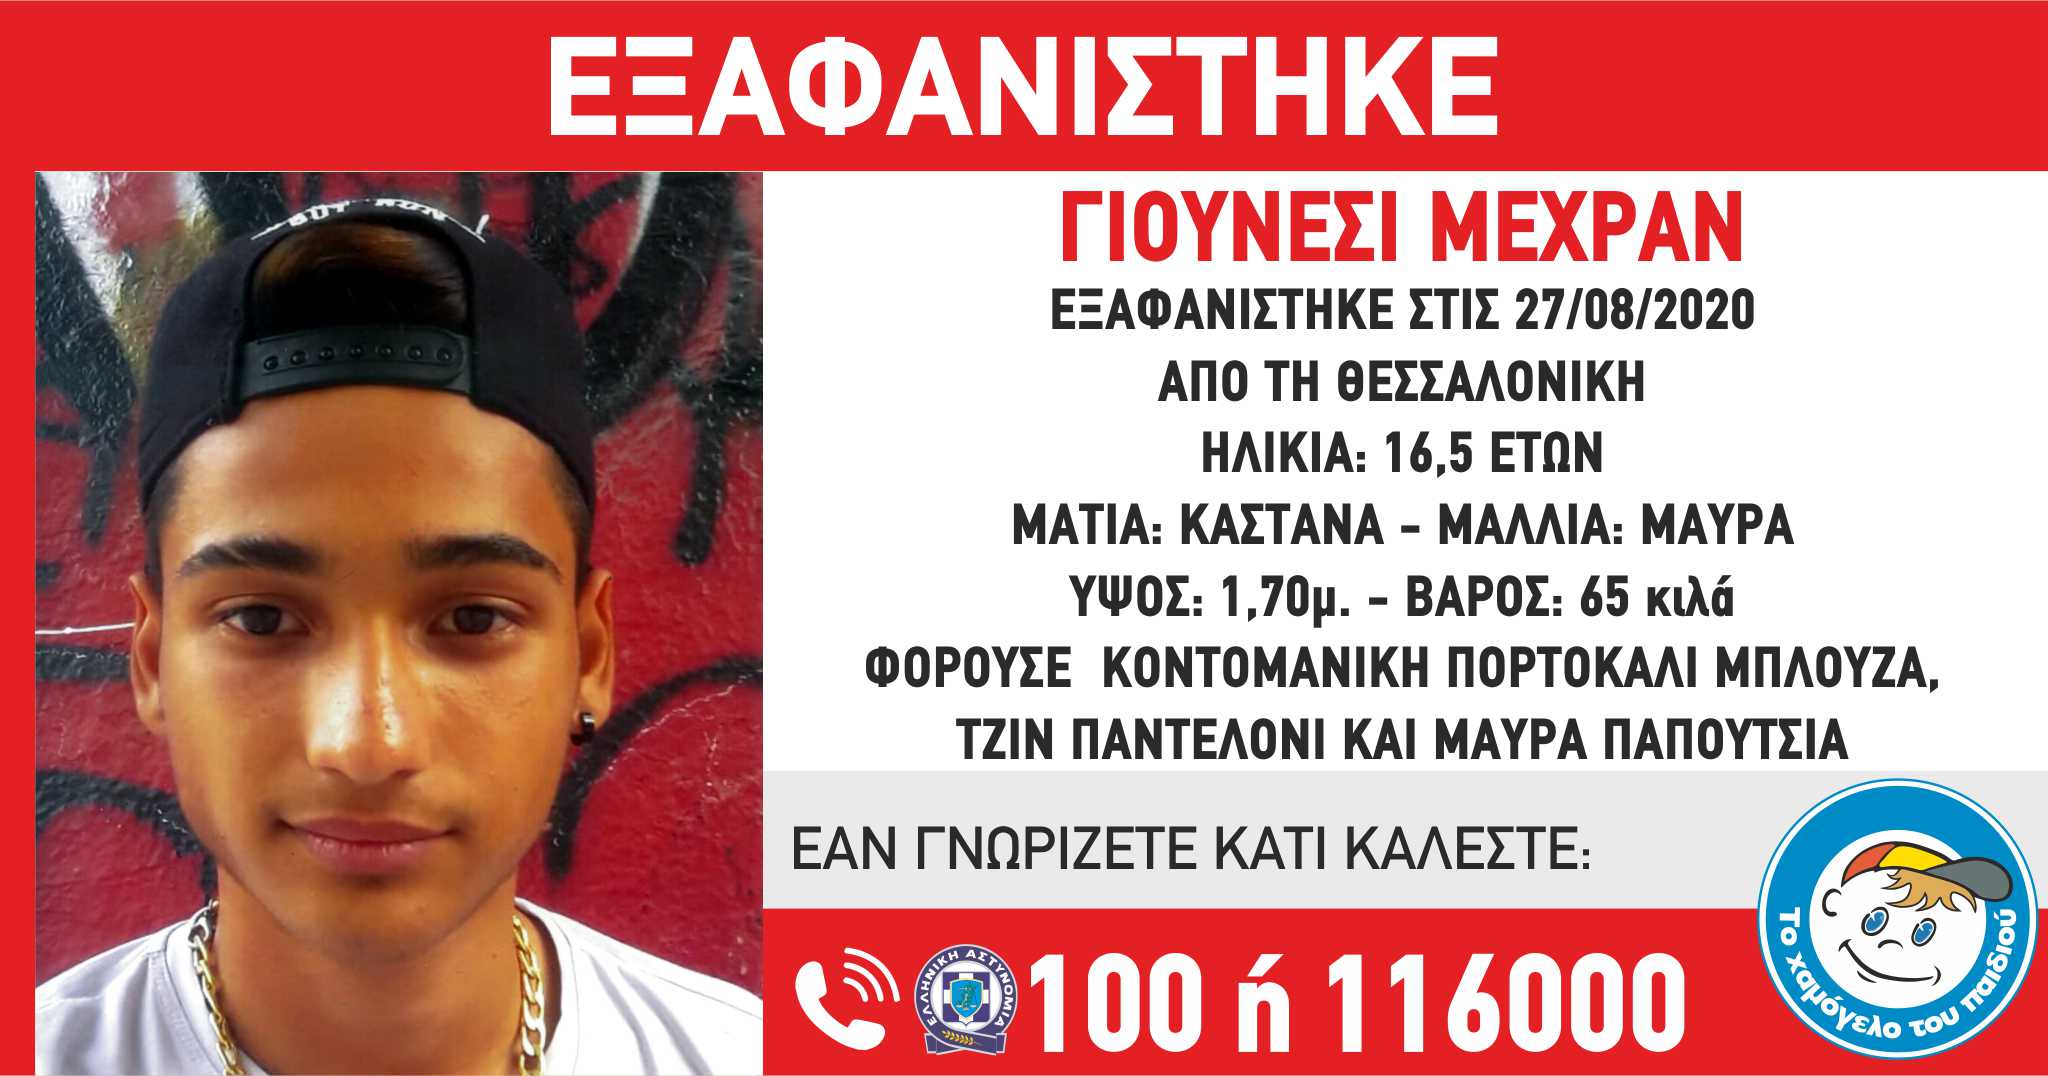 «Το Χαμόγελο του Παιδιού»: Εξαφανίστηκε ο Γιουνέσι Μεχράν 16,5 ετών στη Θεσσαλονίκη